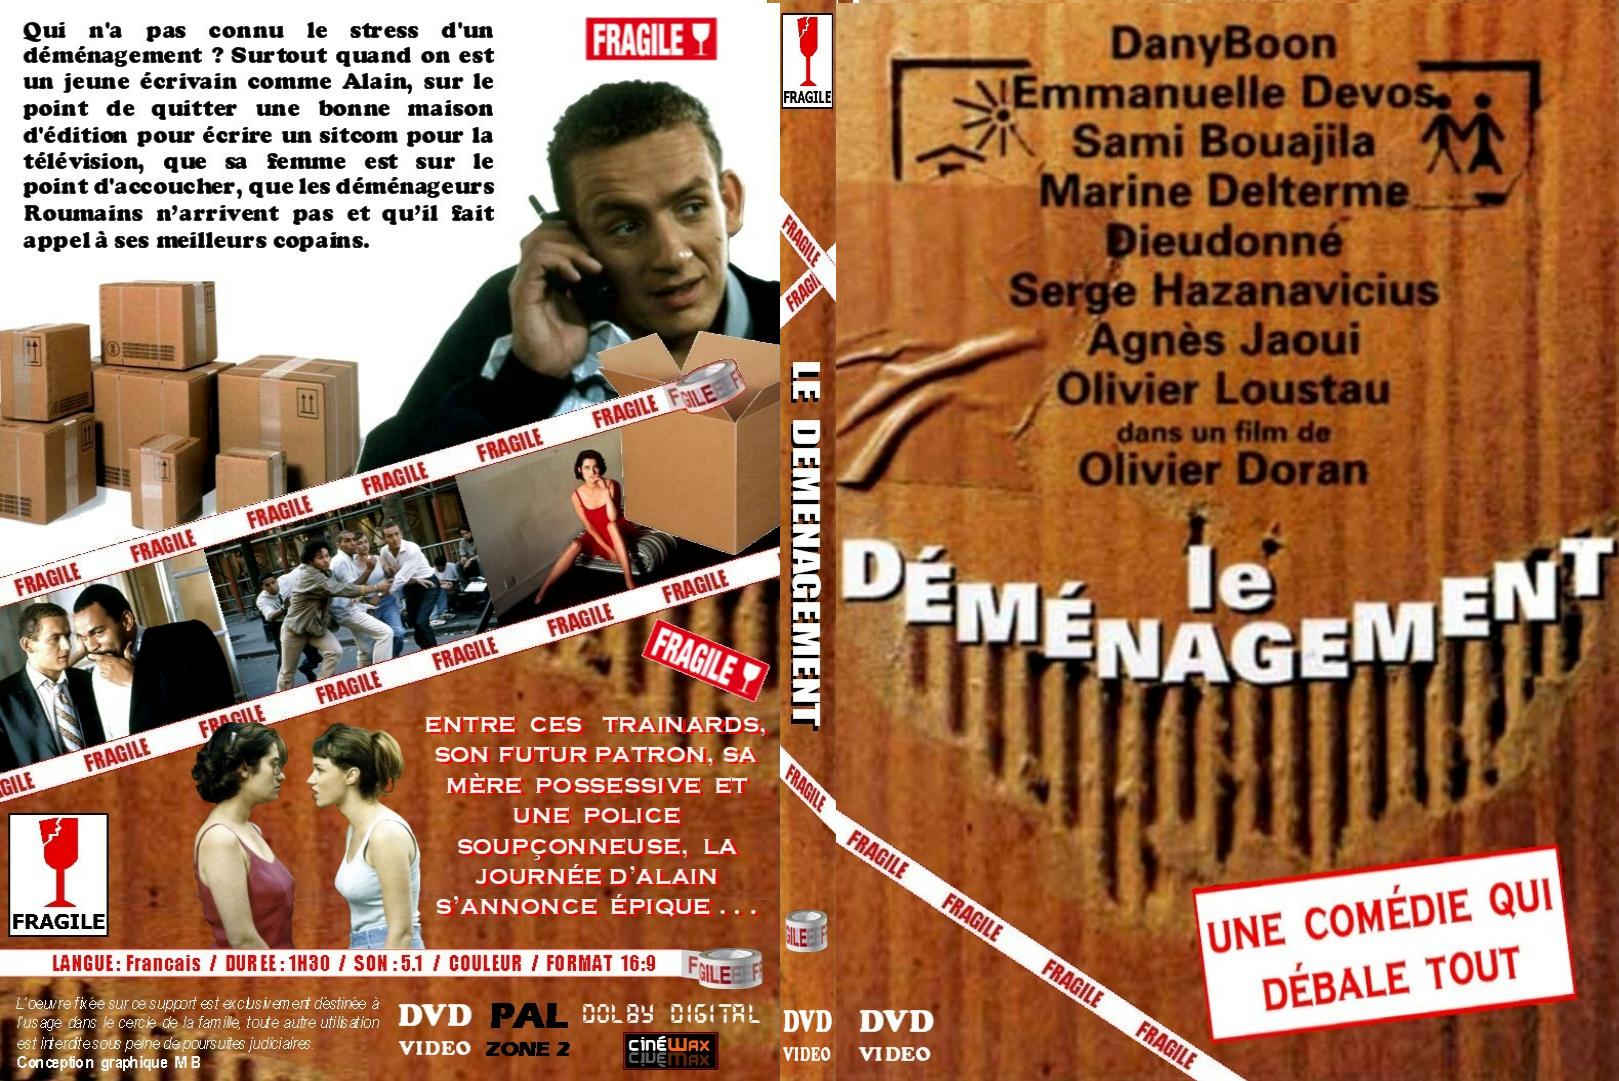 Jaquette DVD Le dmnagement custom - SLIM